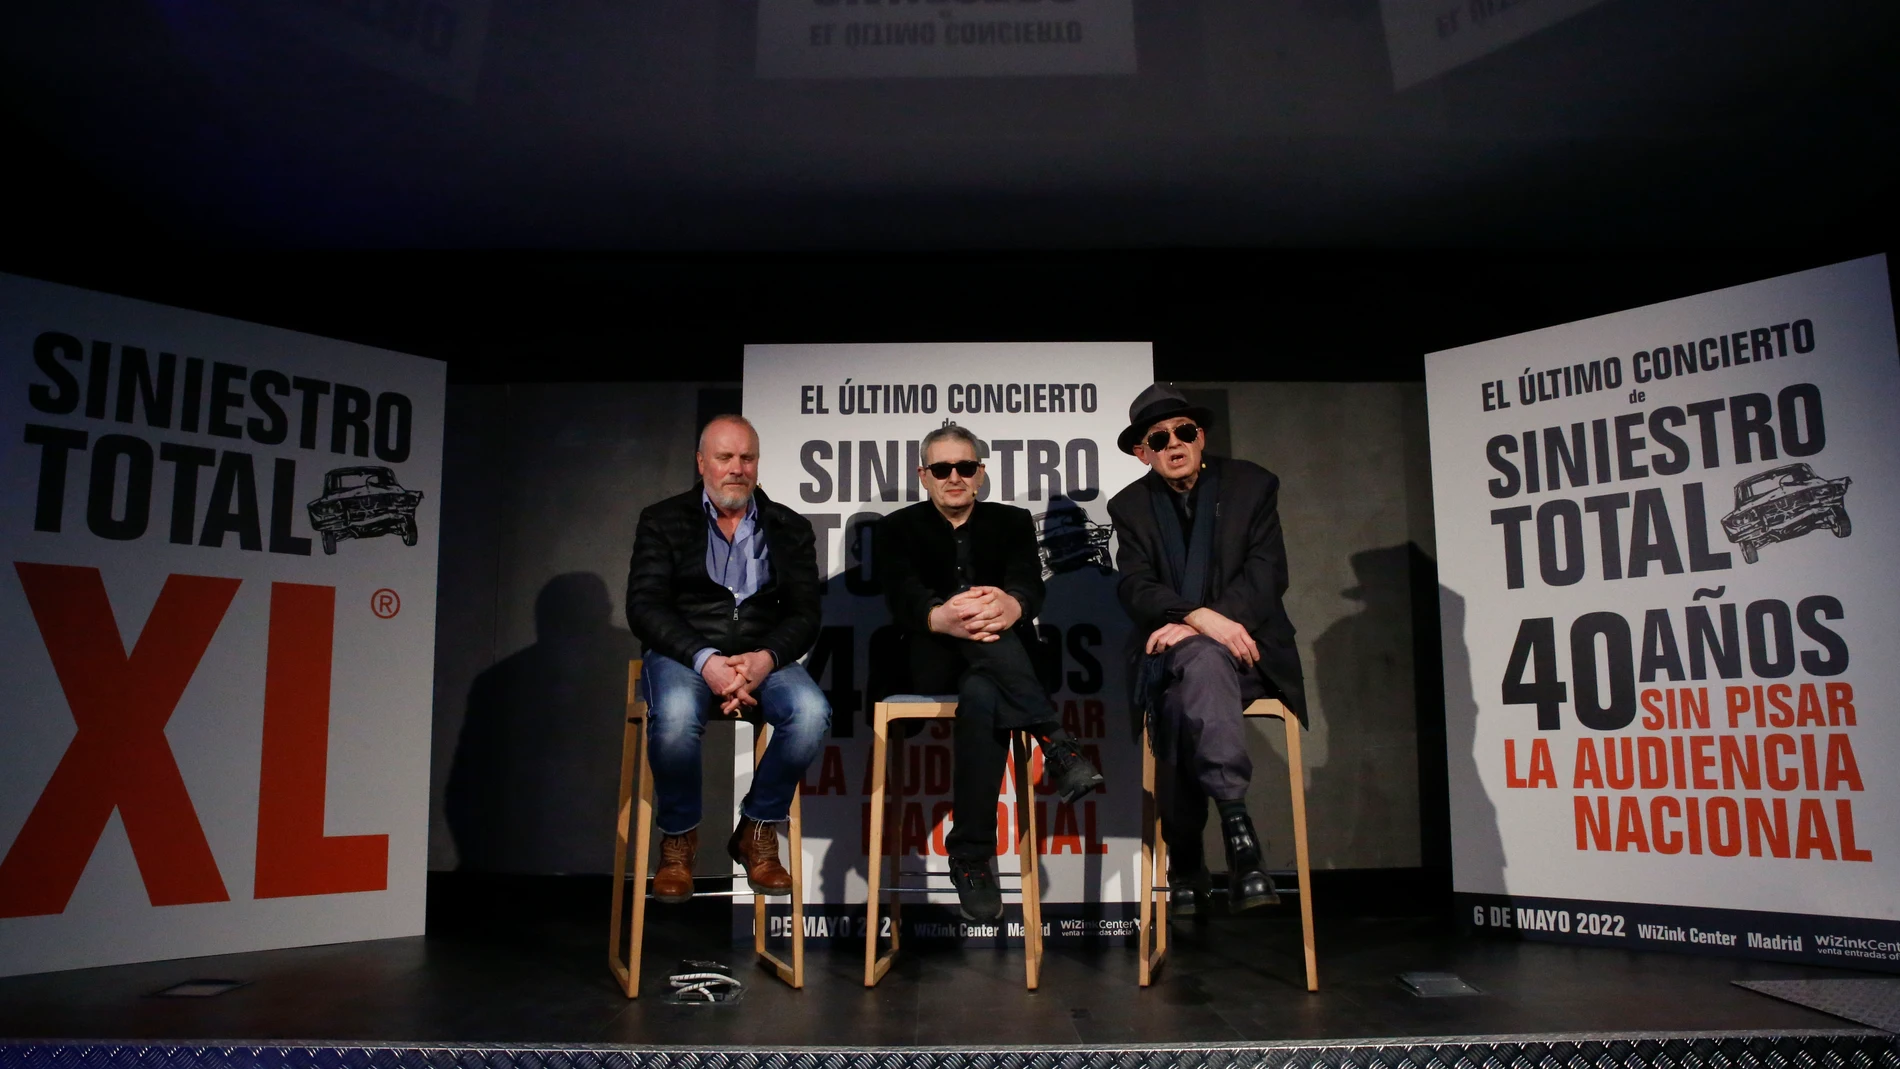 Los componentes de la banda gallega Siniestro Total en la rueda de prensa de su concierto de despedida